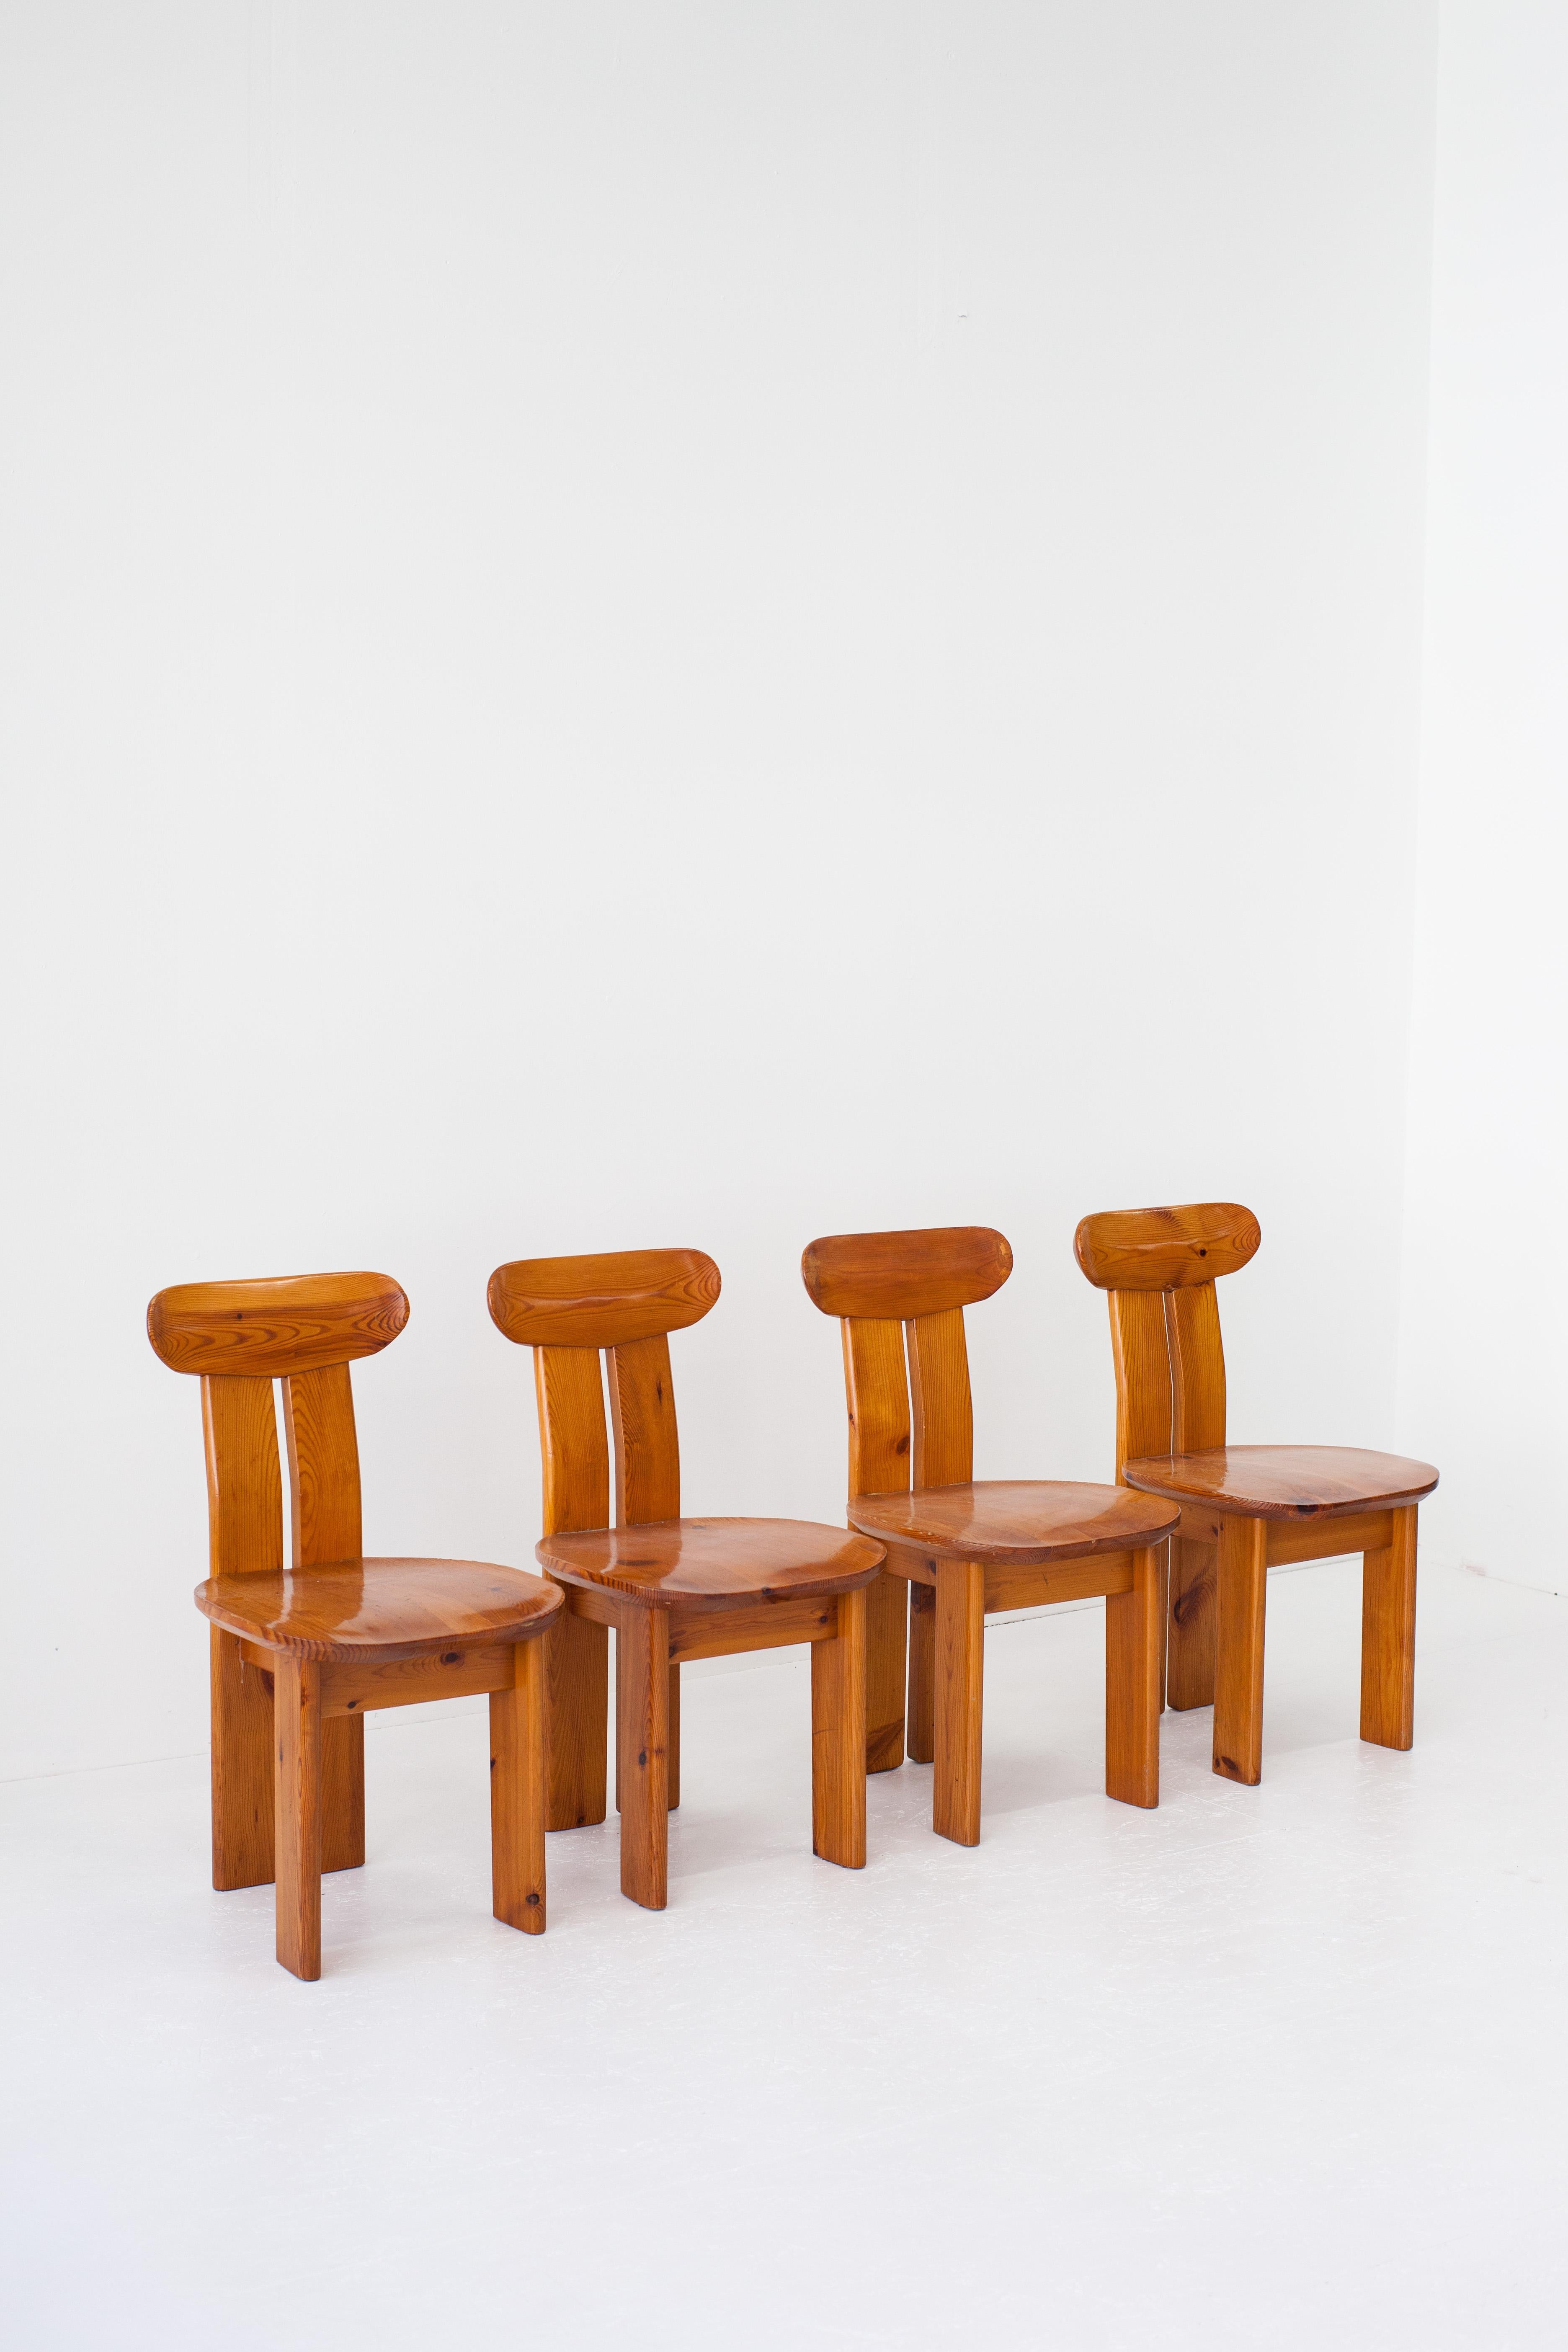 

Ces remarquables chaises de salle à manger incarnent une esthétique sculpturale évoquant l'esprit du design et de l'artisanat italien des années 1970. Bien que le concepteur exact reste inconnu, leur fabrication ressemble fortement au style de